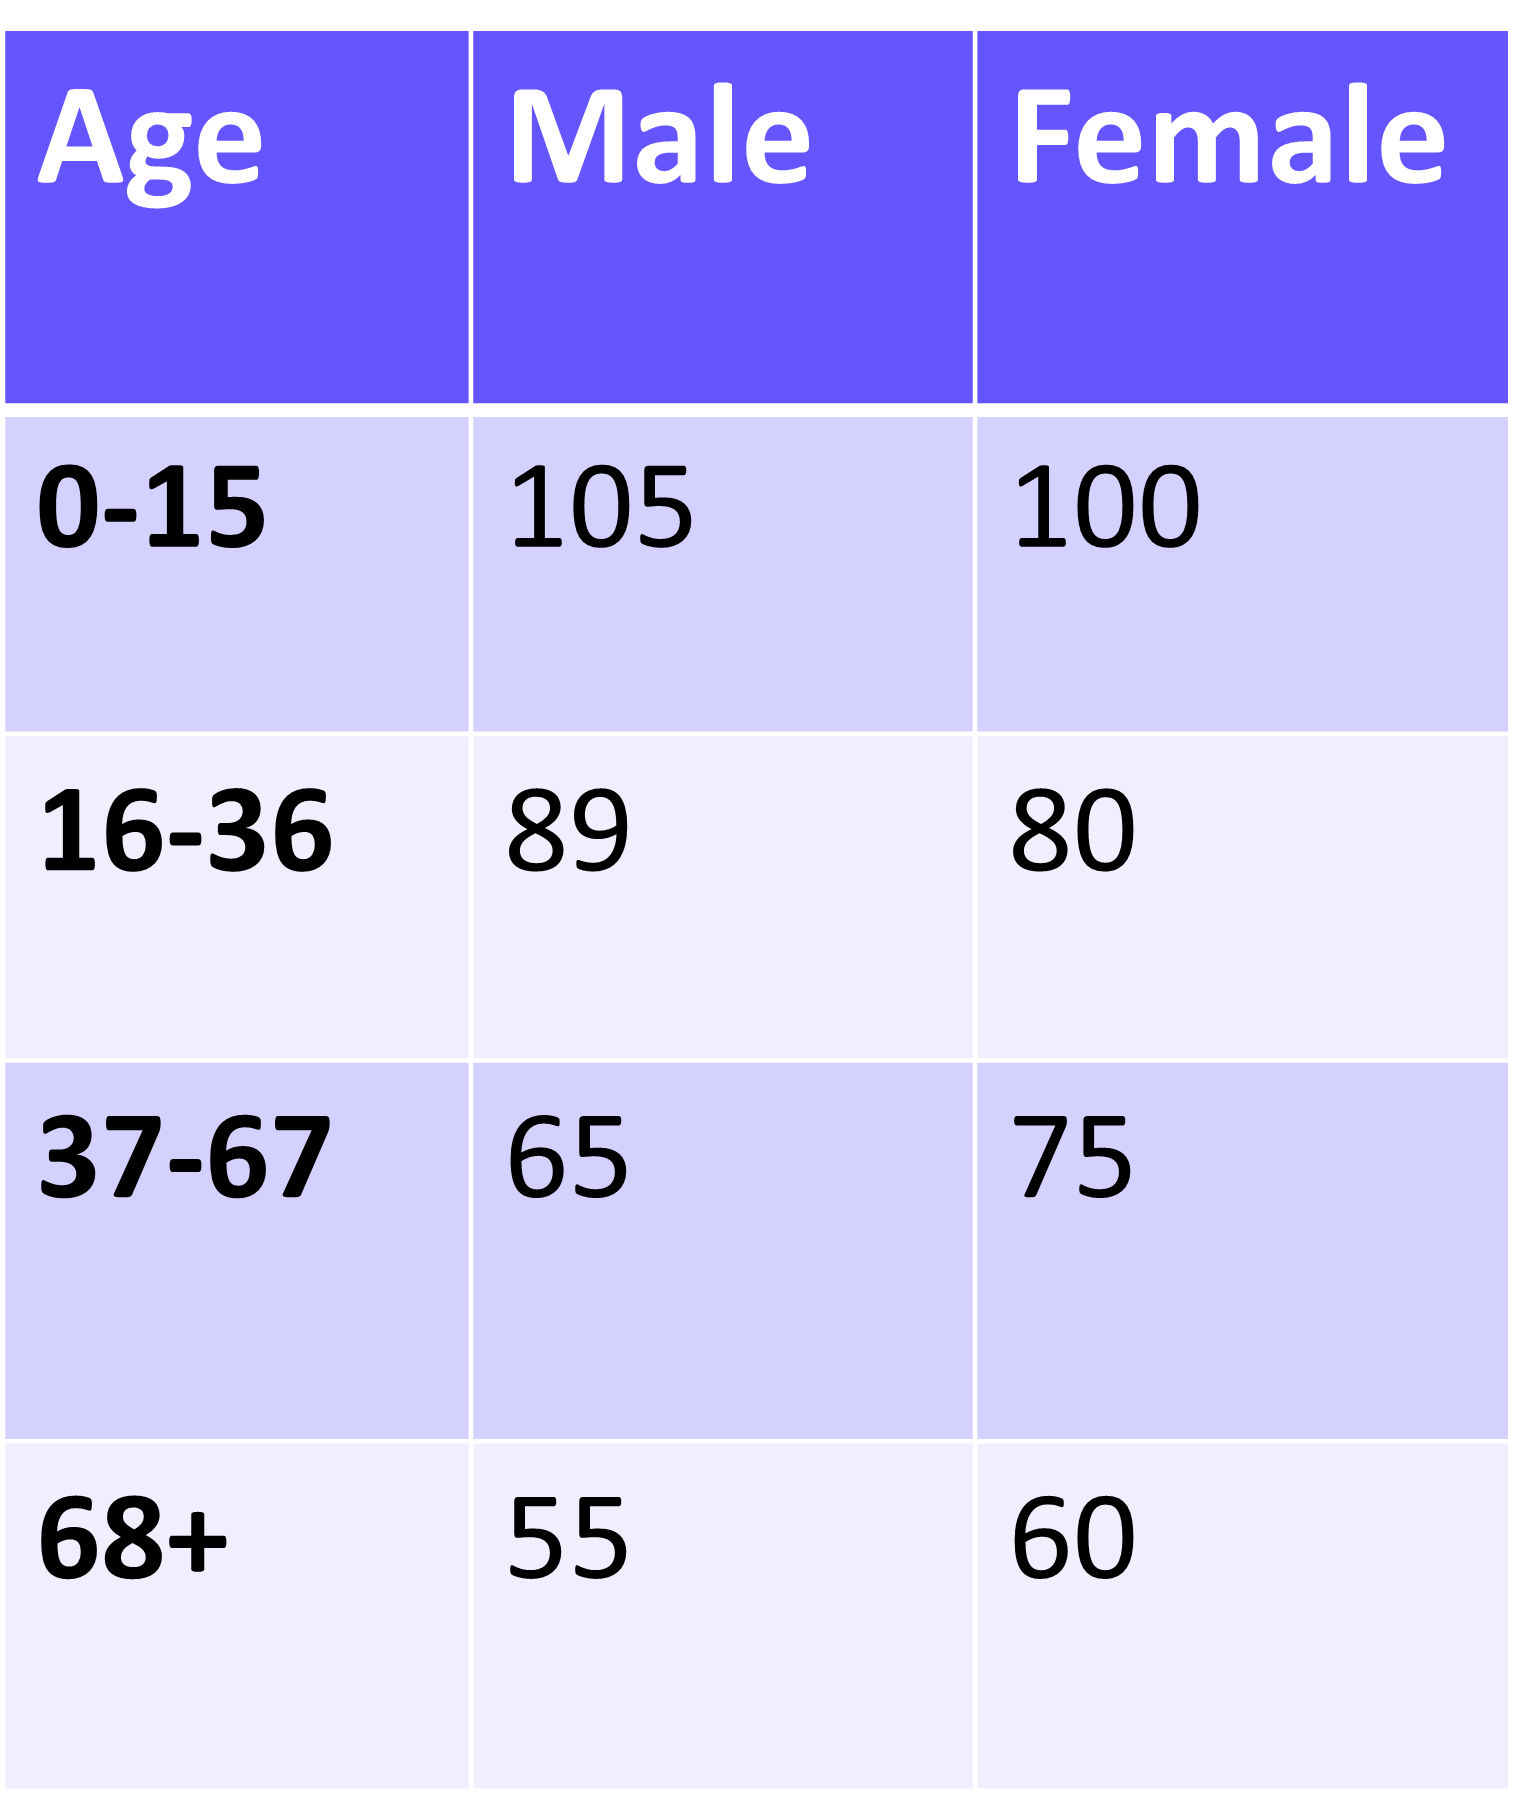 males 0-15: 105 females 0-15: 100 males 16-36: 89 females 16-36: 80 males 37-67: 65 females 37-67: 75 males 68+: 55 females 68+: 60